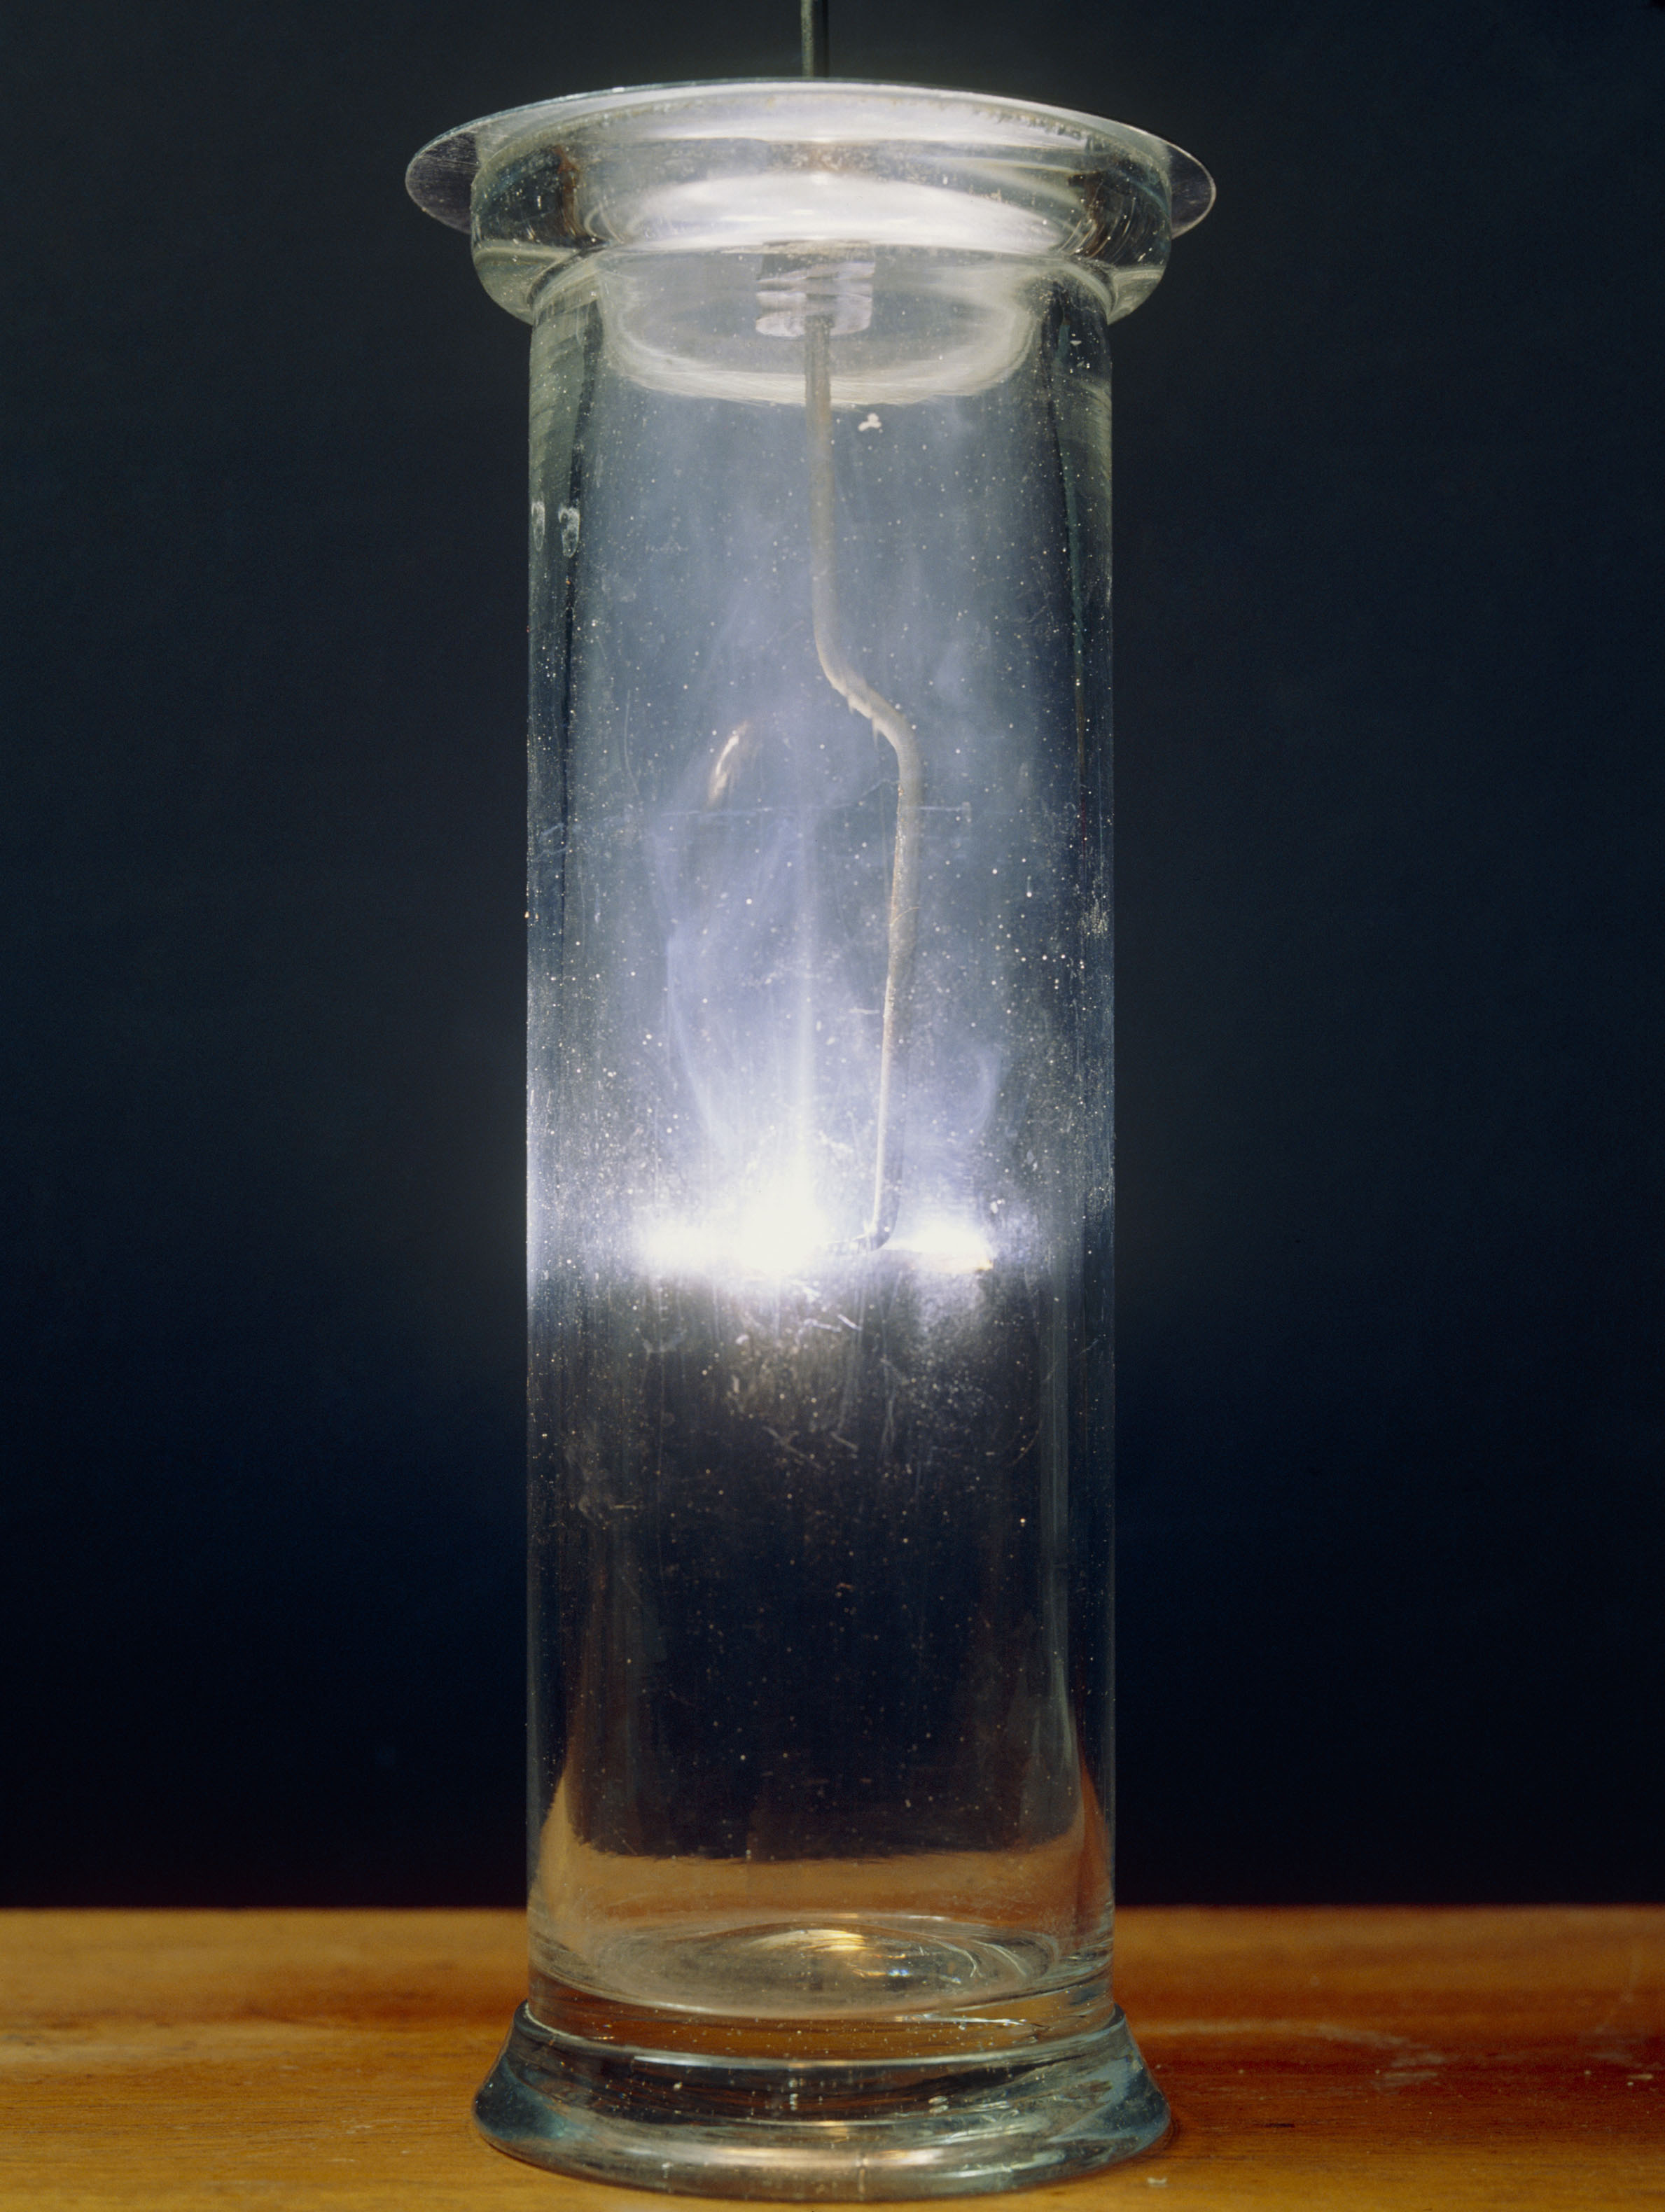 Fotografija prikazuje valjkastu, staklenu, prozirnu posudu u kojoj se događa reakcija gorenja kalcija